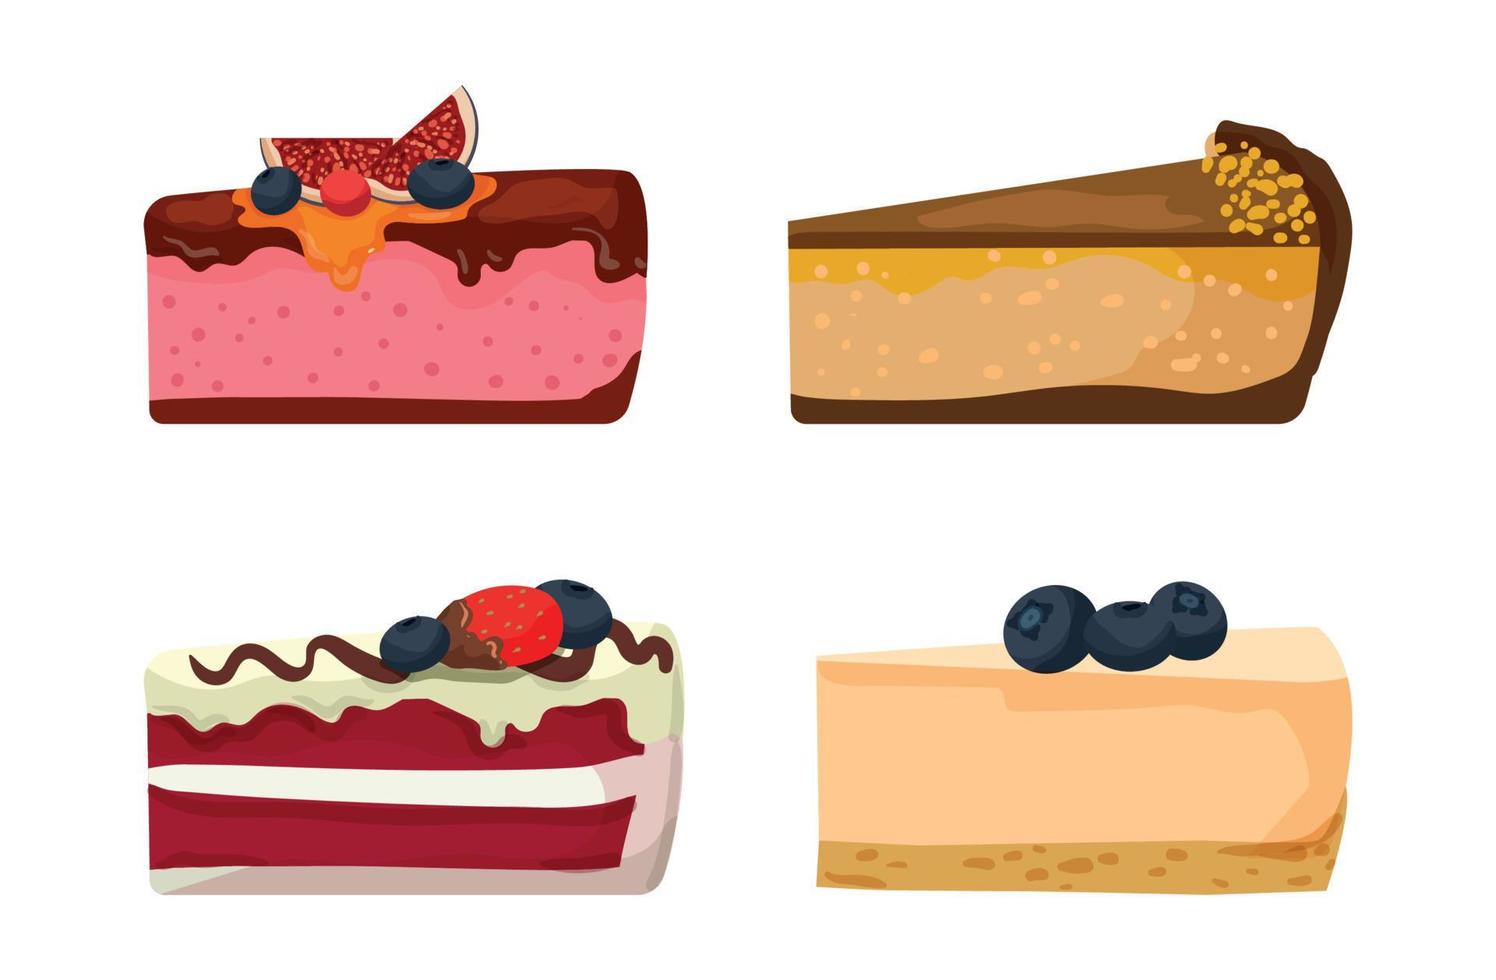 illustrazioni colorate di torte vettore